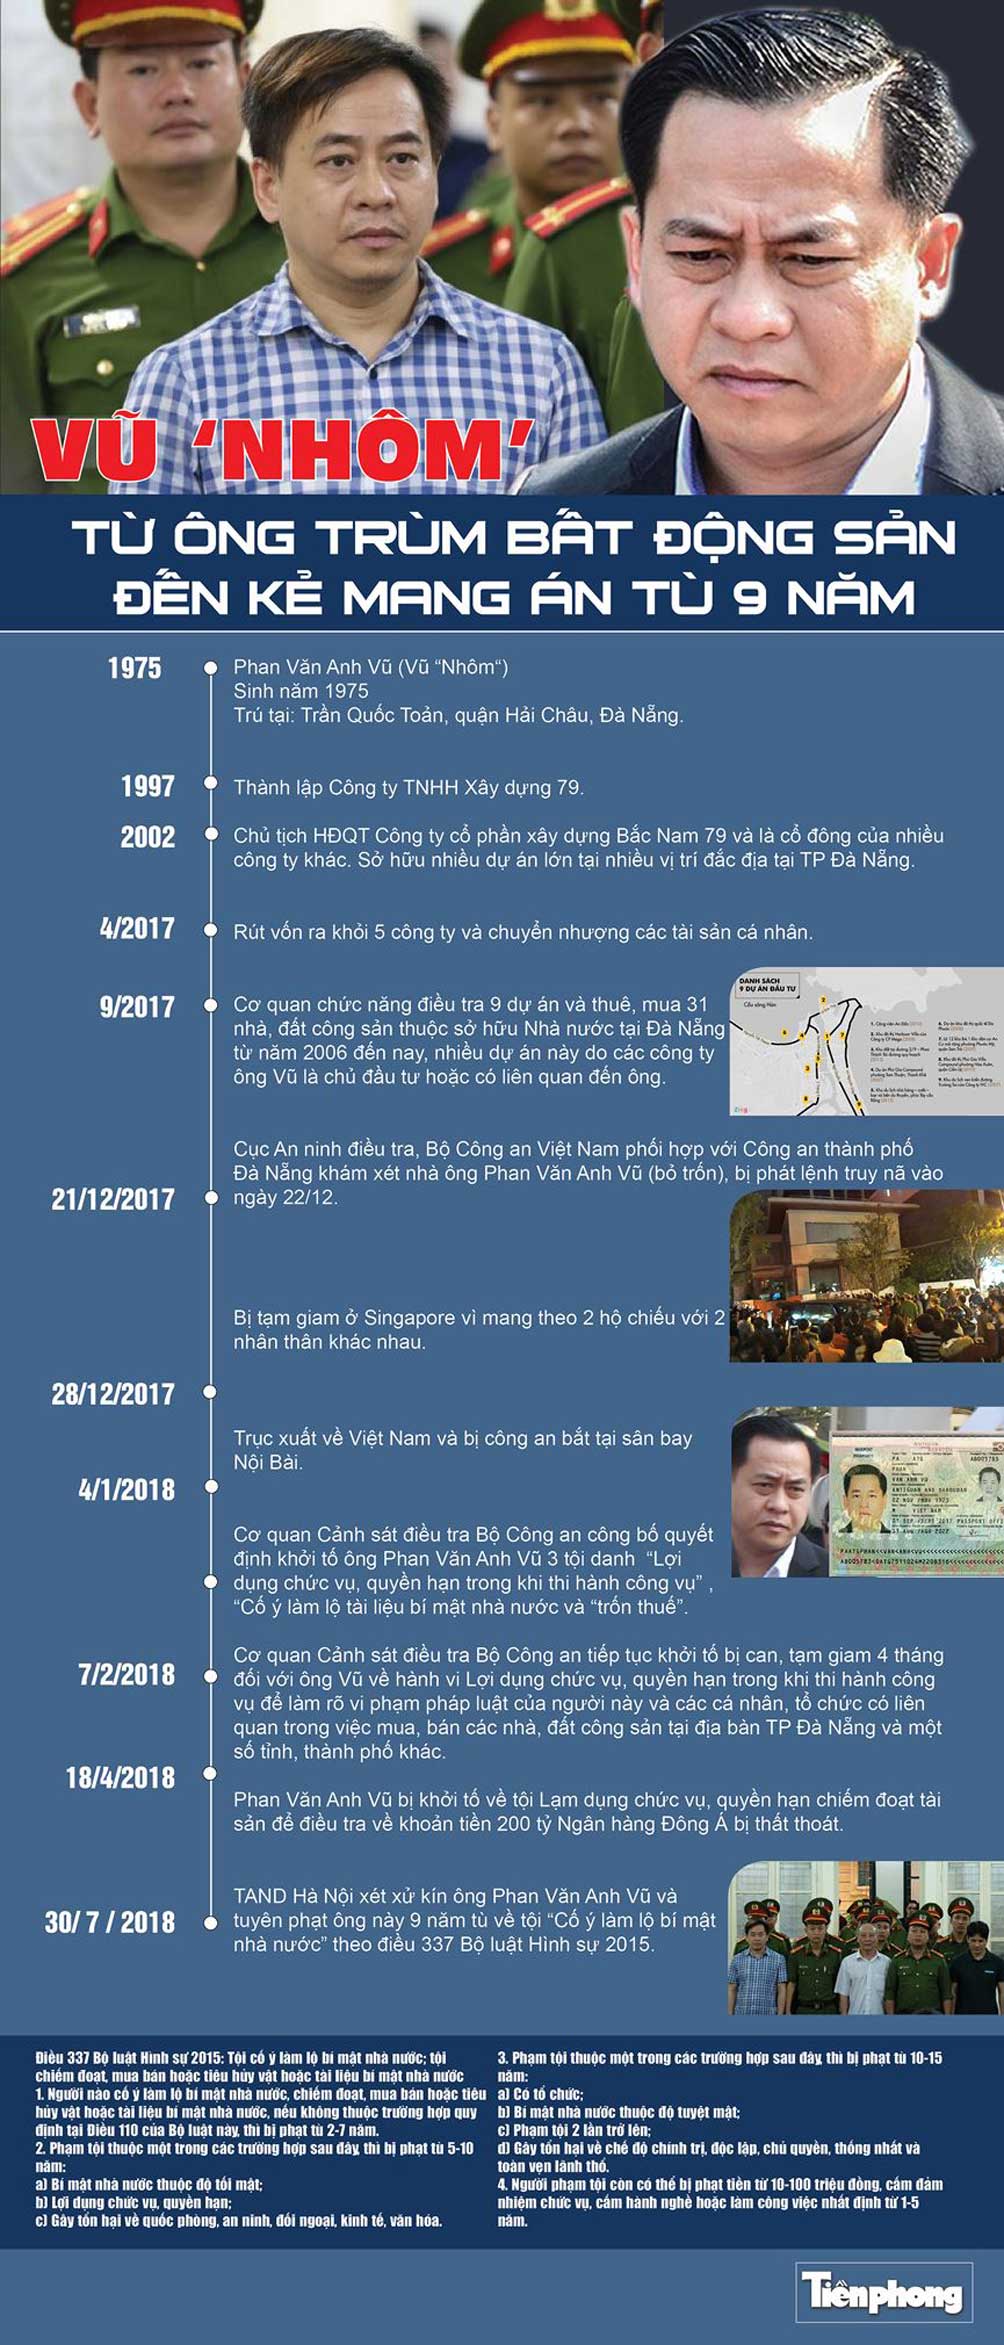 [Infographics] Từ ông trùm bất động sản đến người mang án tù 9 năm - 1